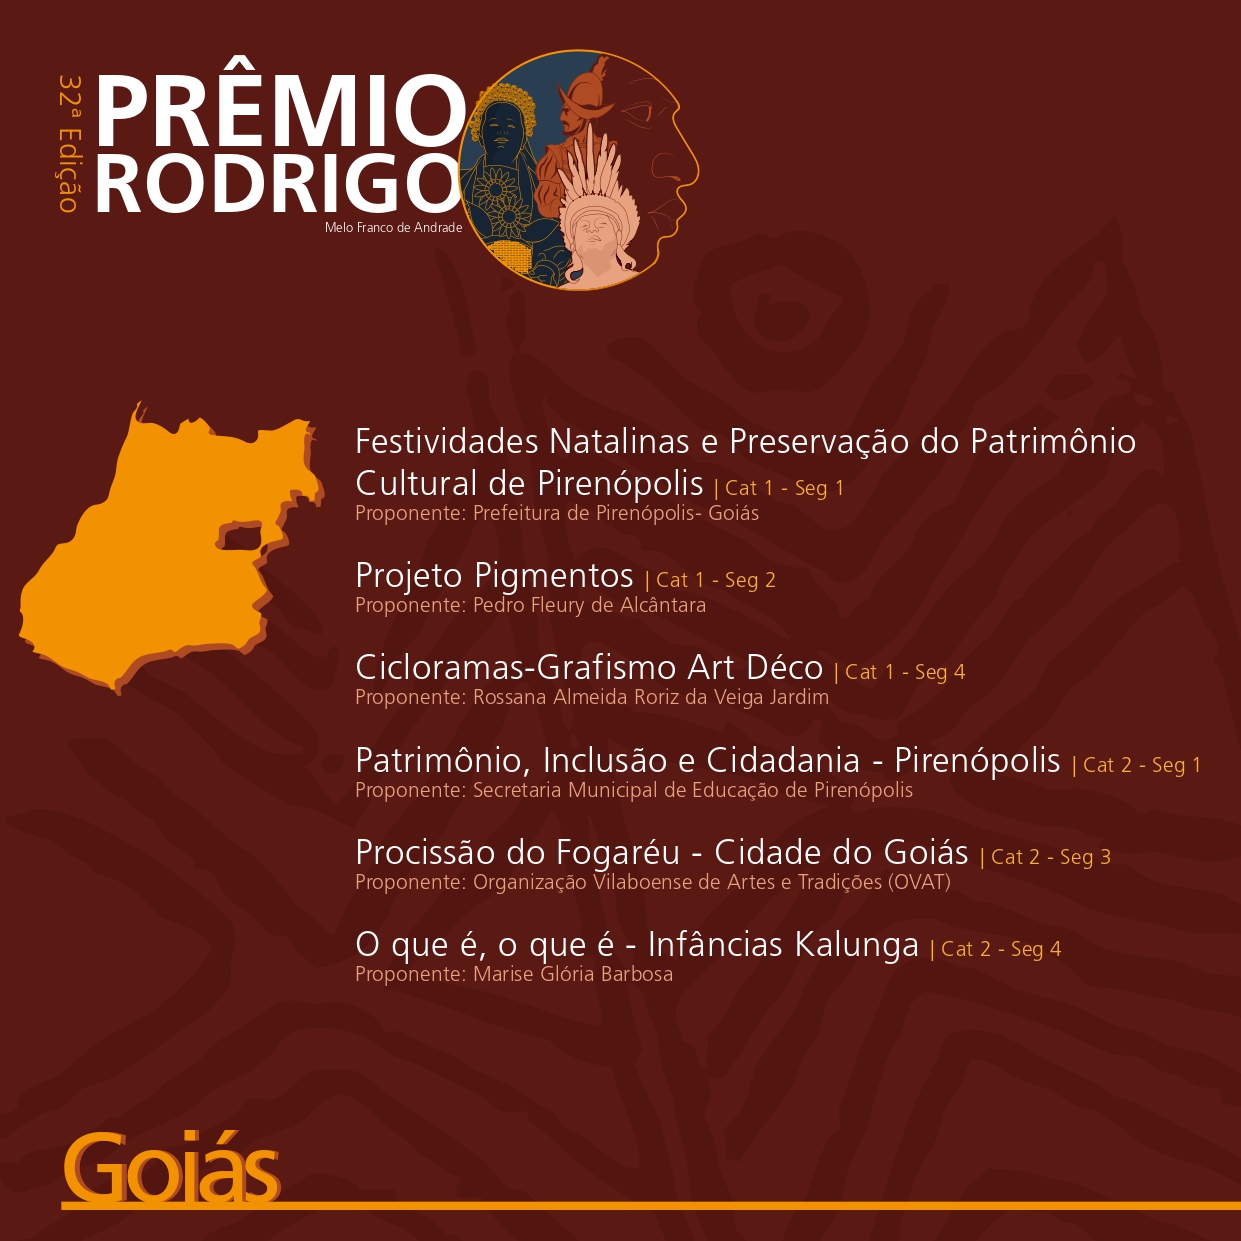 Prêmio Rodrigo